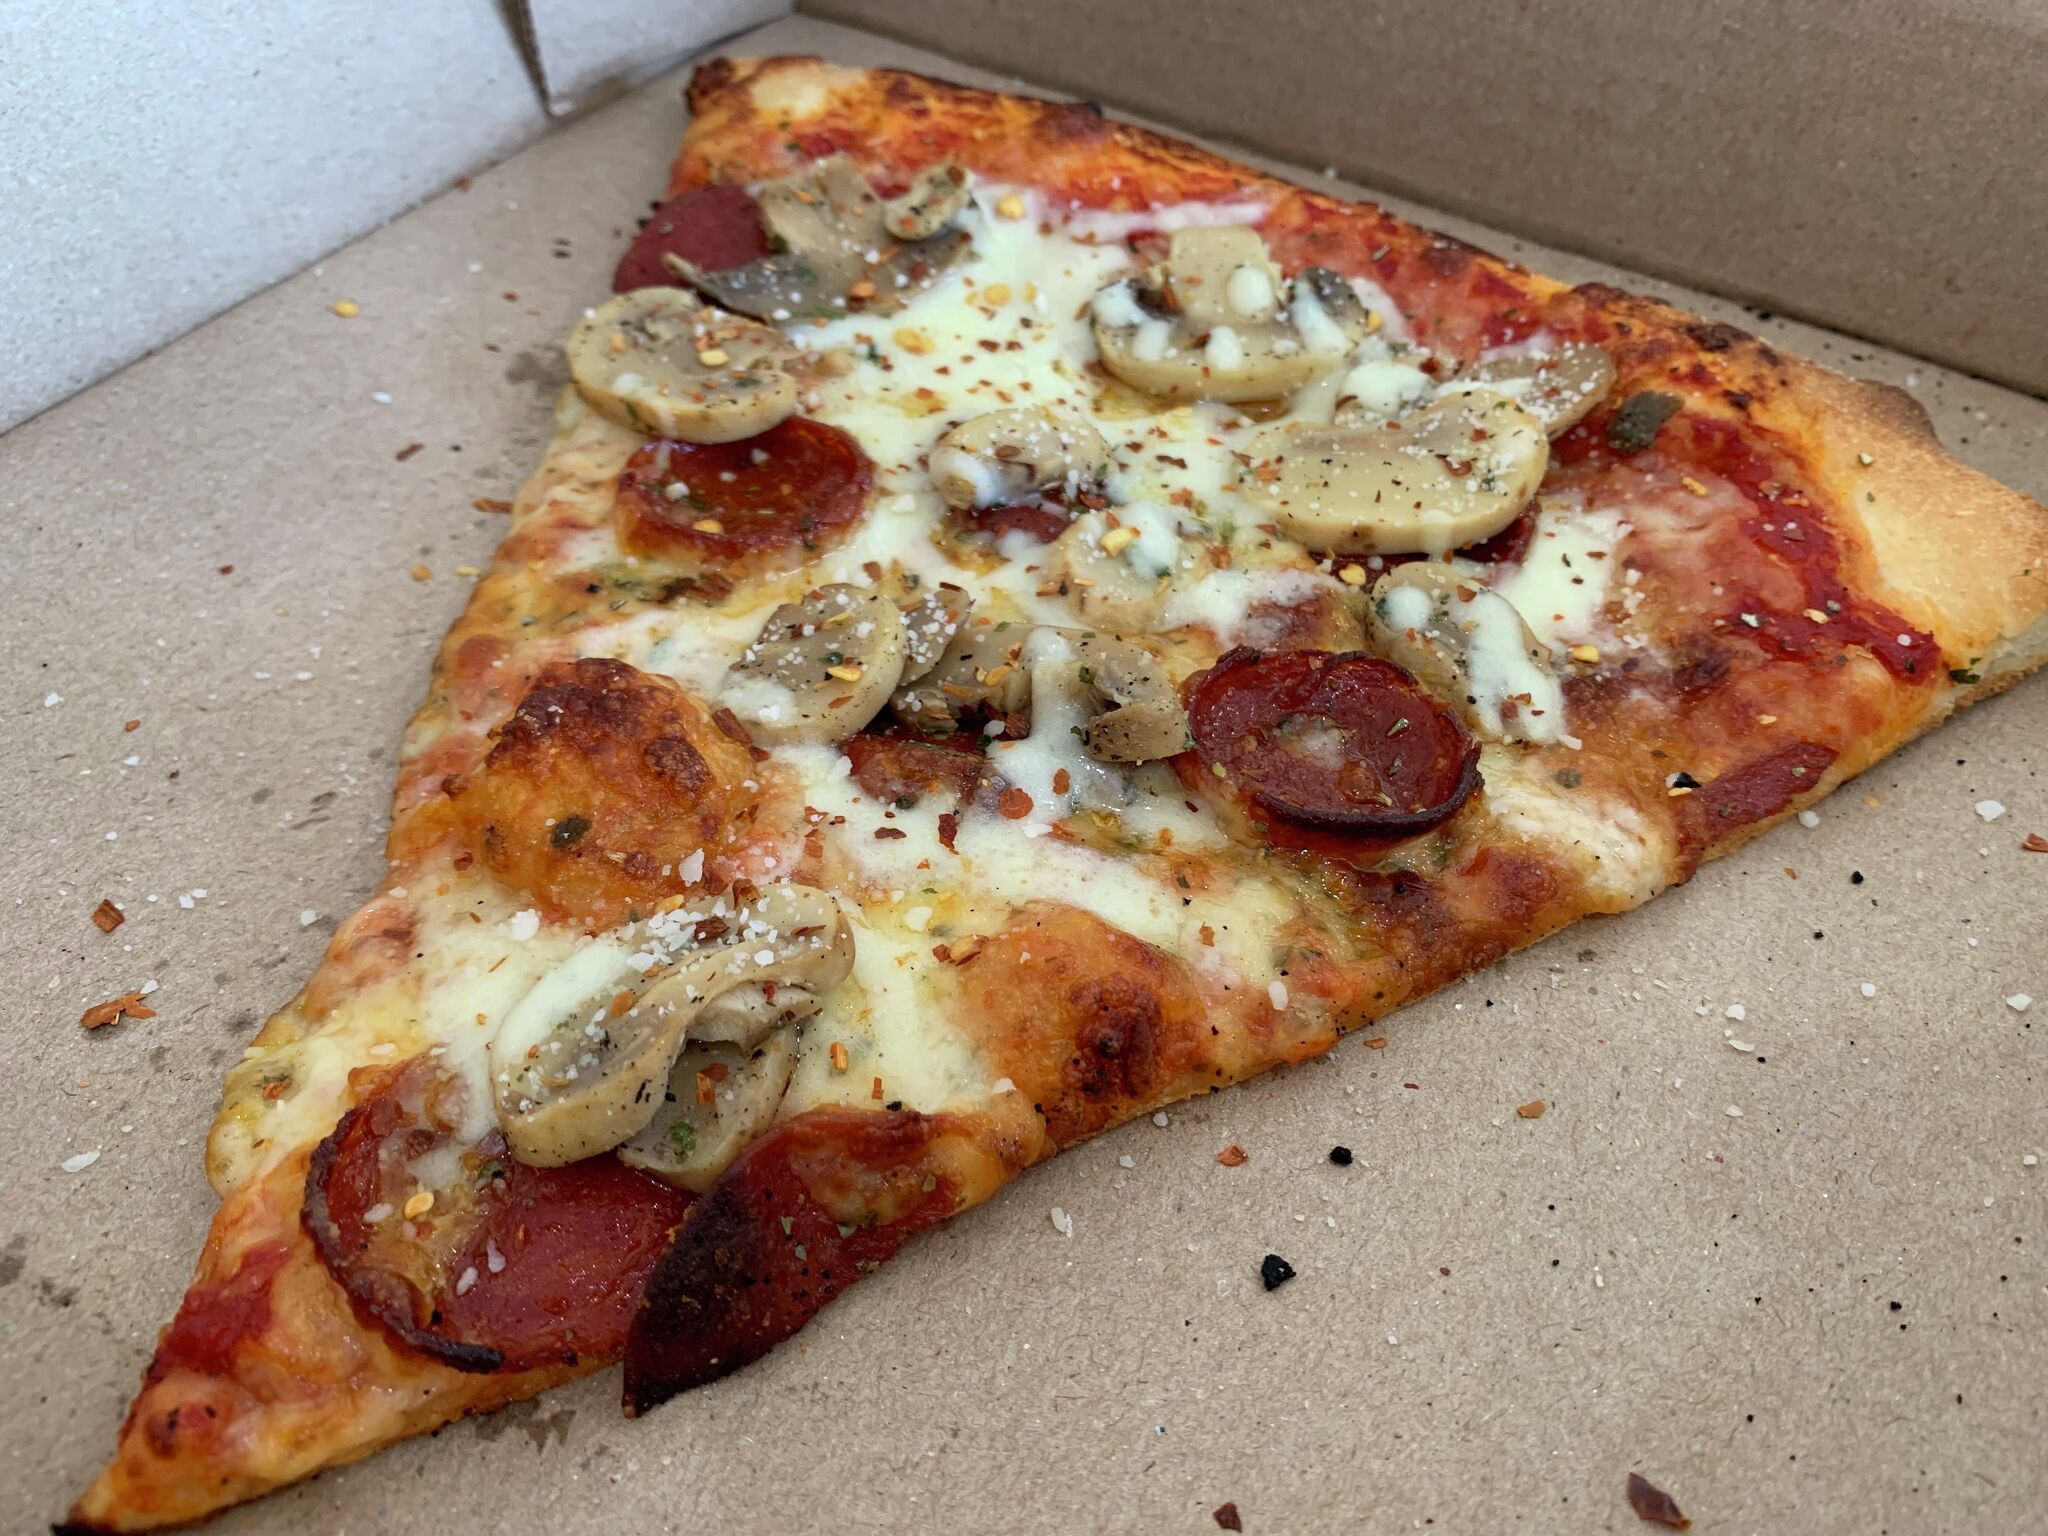 Capo's Pizzeria每天提供不到10美元的午餐特价。